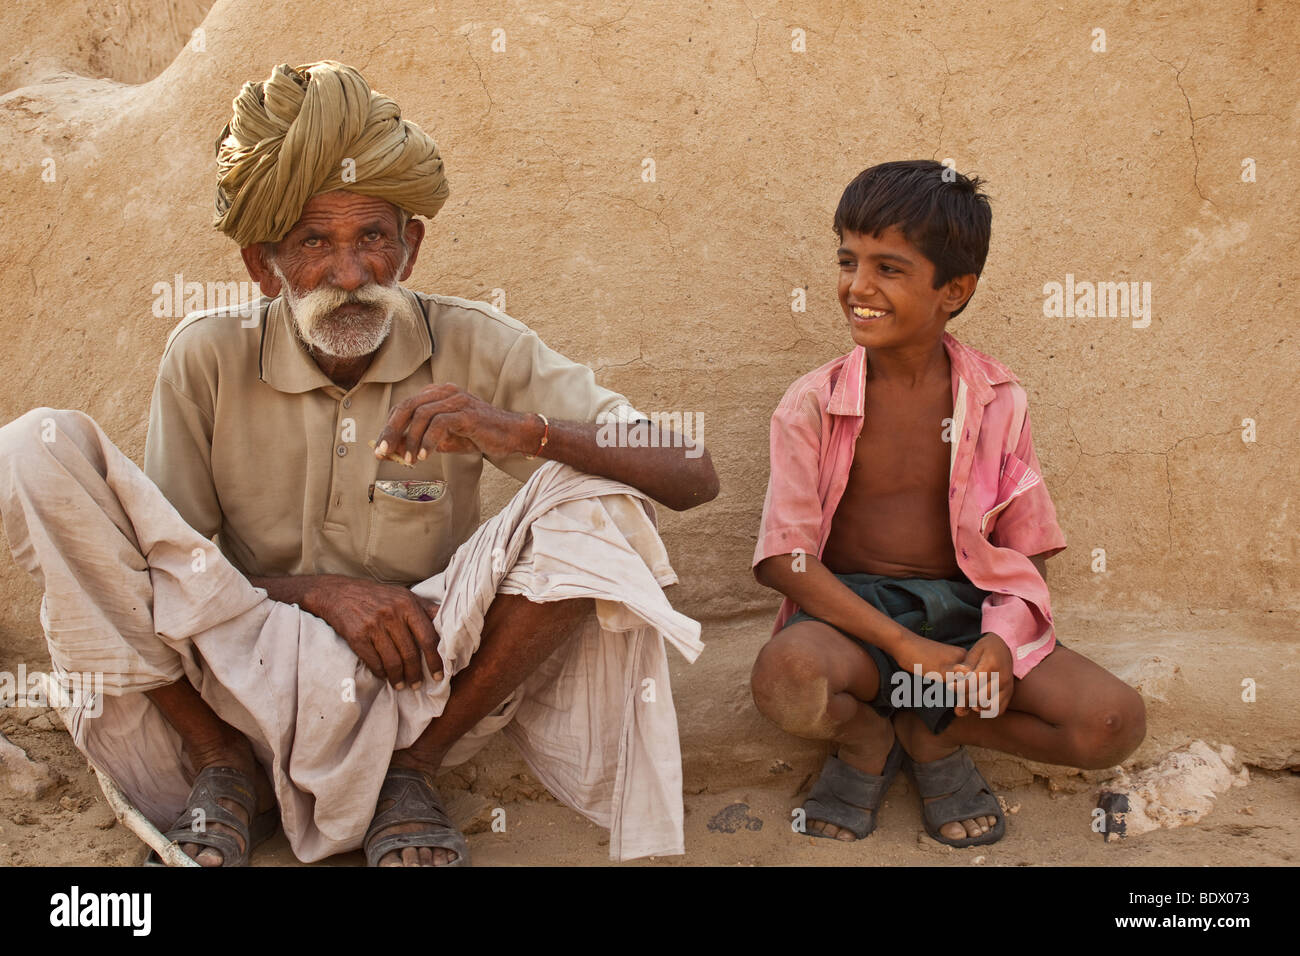 Désert du Thar, Inde un vieux villageois Rajput fume une cigarette tandis qu'un jeune beedi garçon sourit et regarde. Banque D'Images